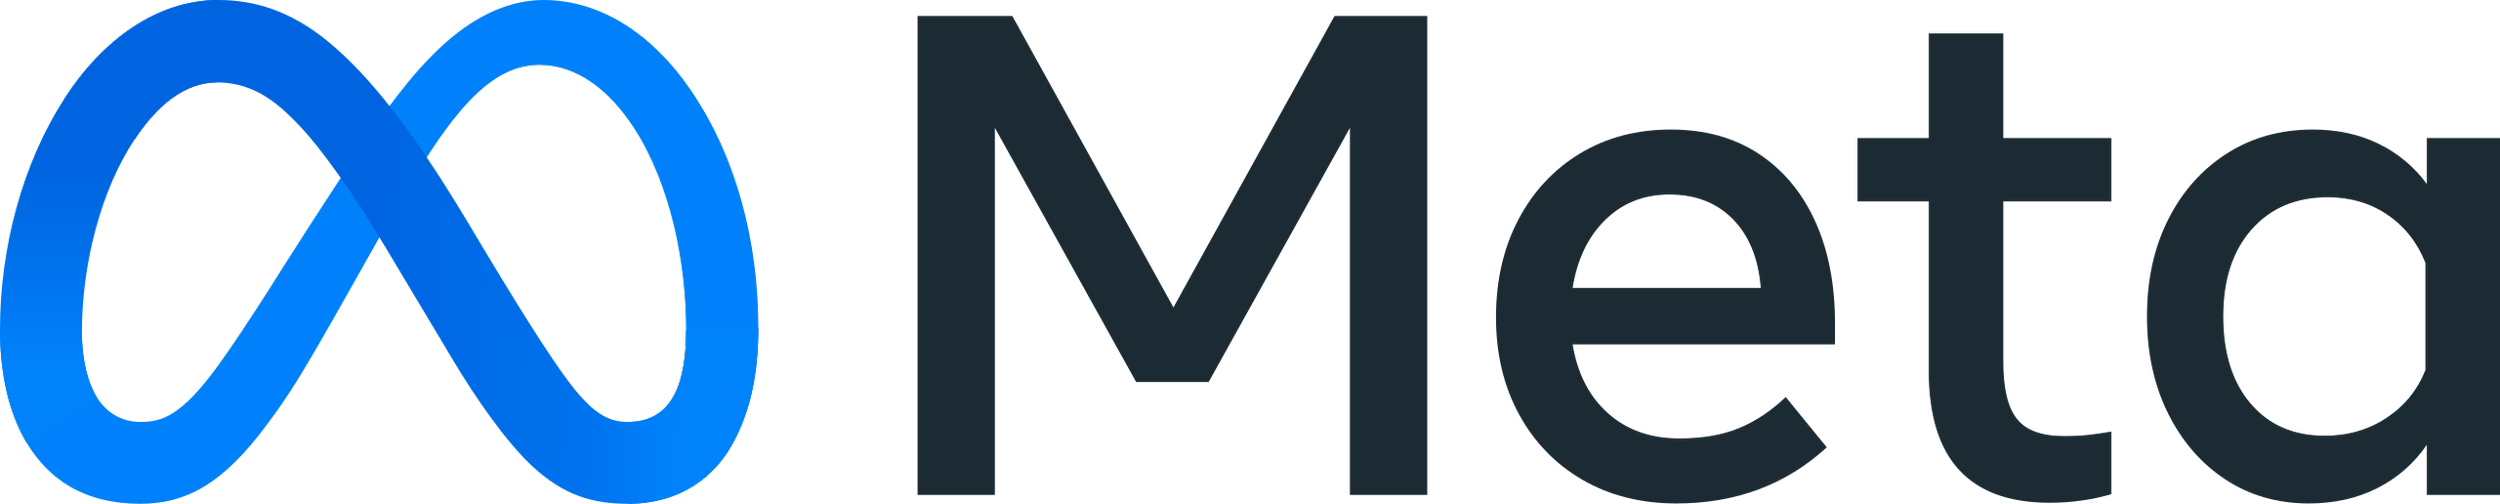 meta-logo.png